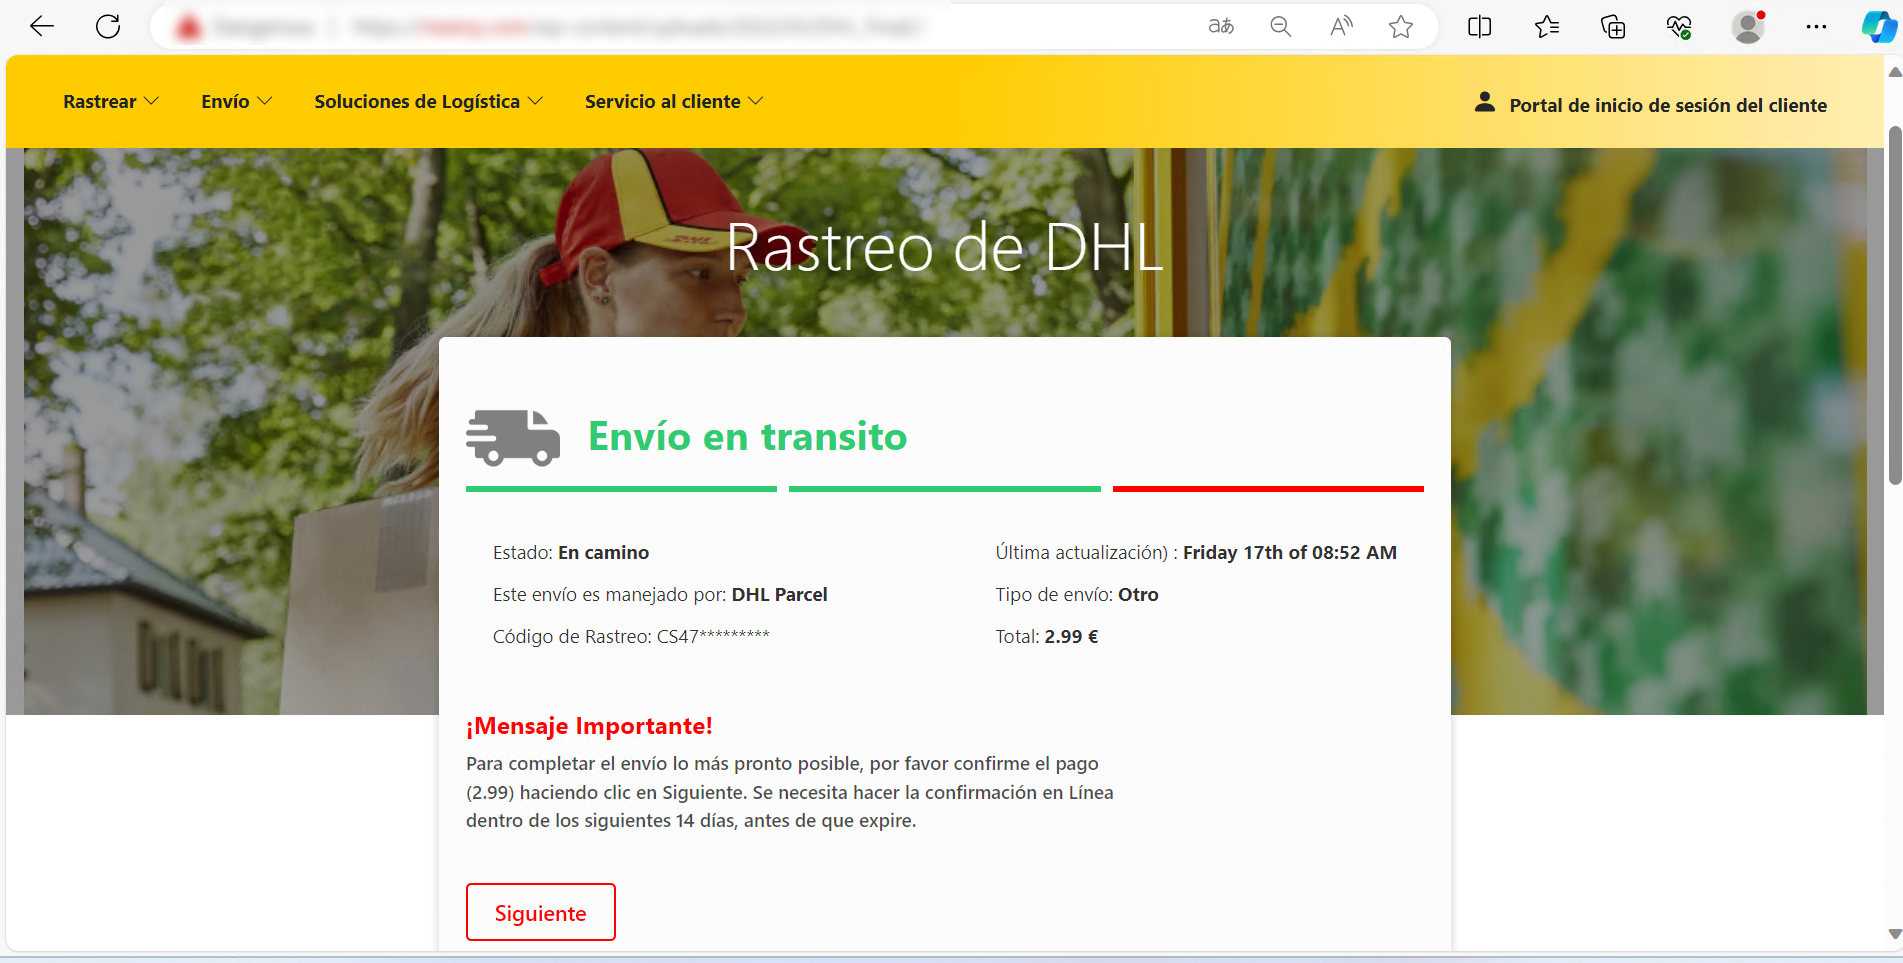 Se muestra la web que suplanta a DHL, mostrando que el envío en tránsito y se necesita abonar 2,99€ de gastos de aduana y muestra cómo proceder bajo las palabras ¡Mensaje Importante